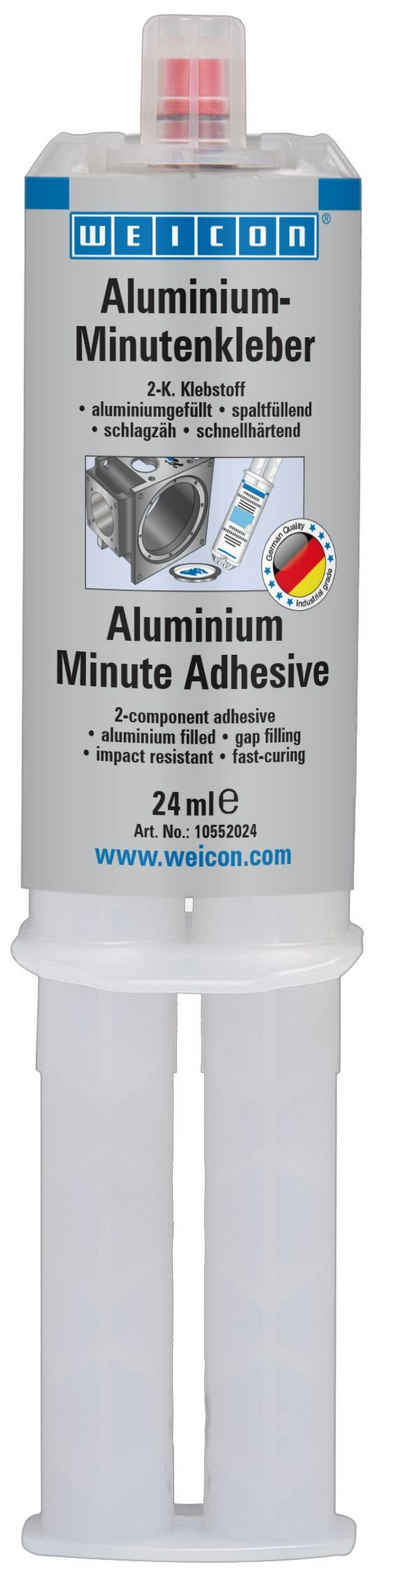 WEICON Klebstoff Aluminium-Minutenkleber, Epoxidharzklebstoff, 24 ml, (Set), Zum Auffüllen von Rissen und Löchern